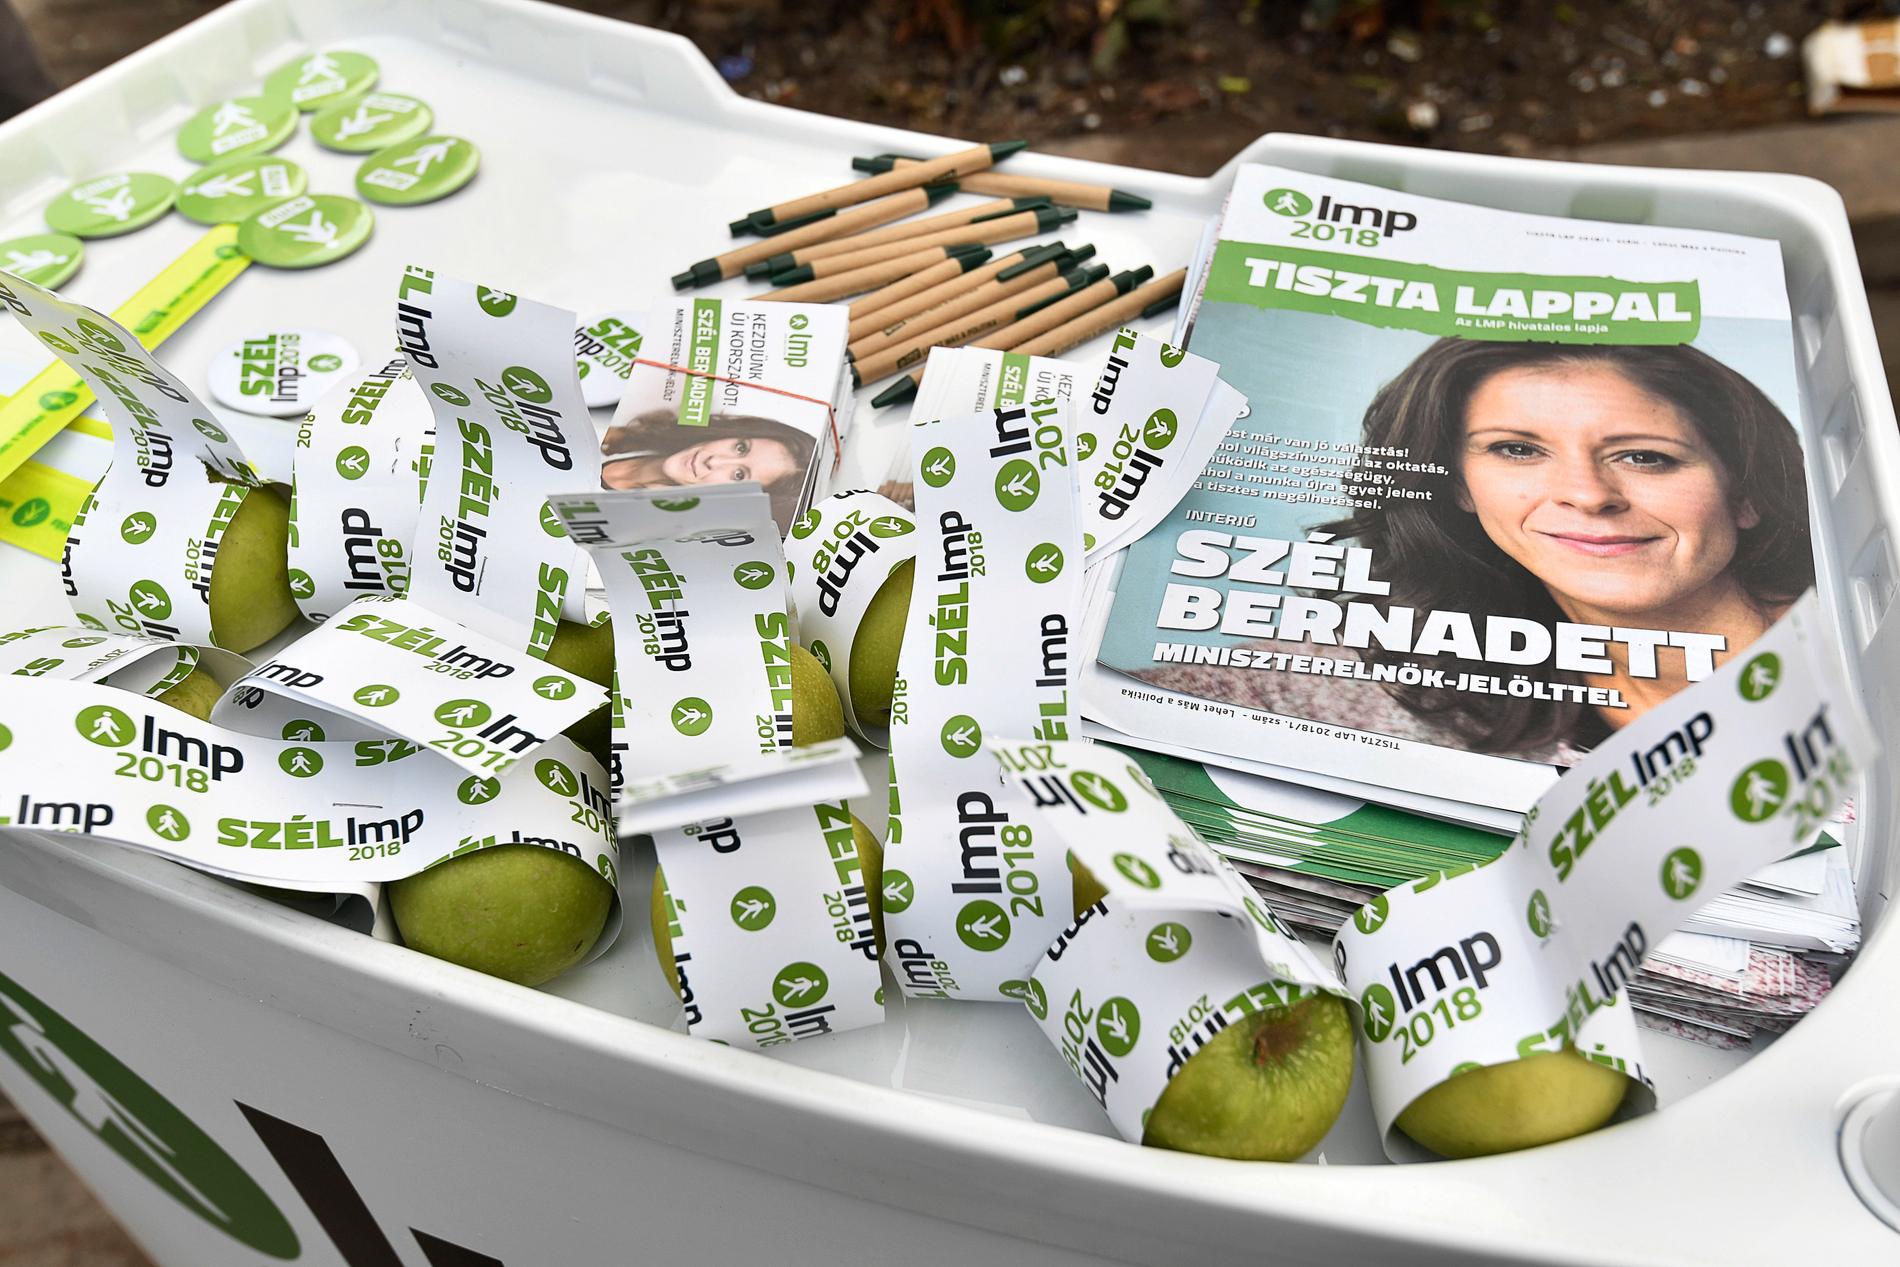 25-åriga Maté delar ut äpplen och flygblad för det gröna partiet LMP.